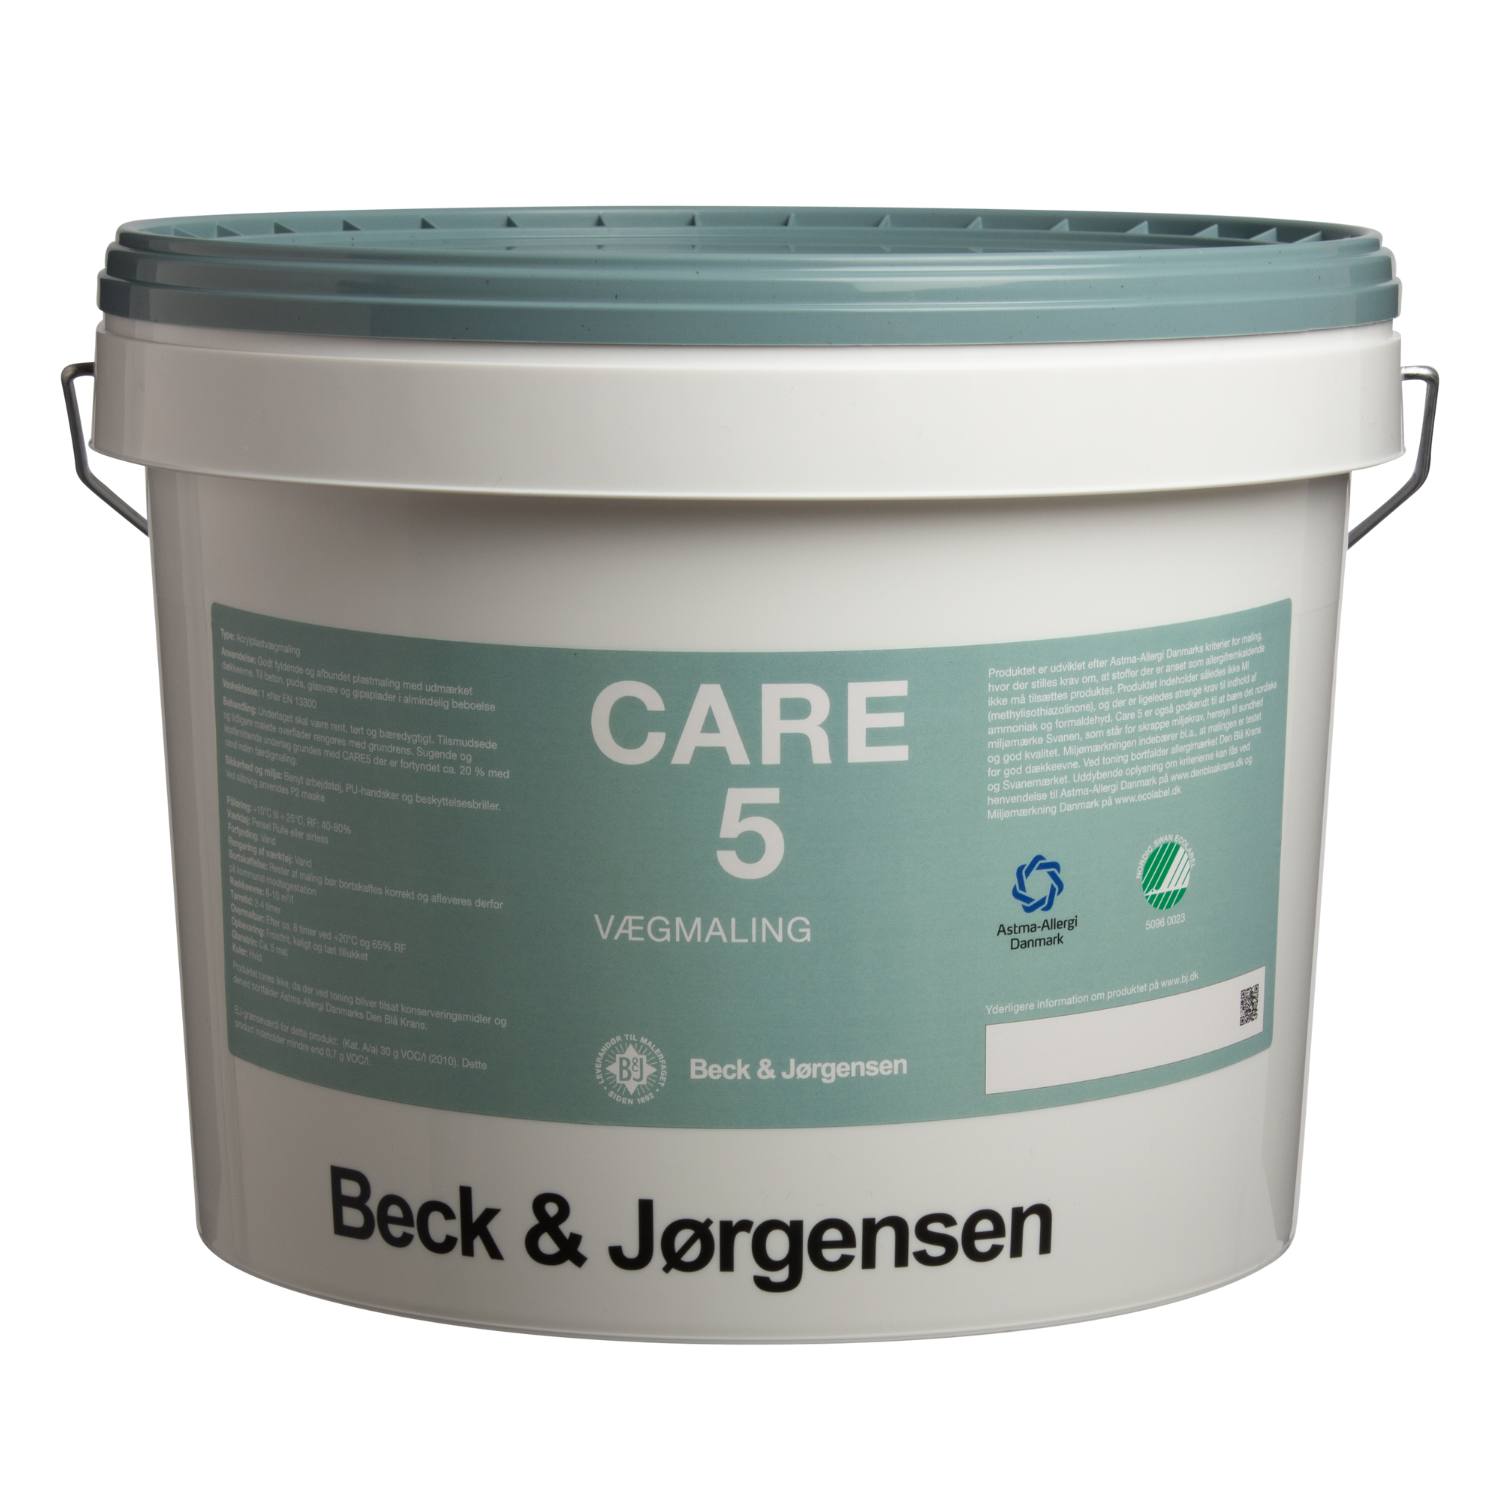 Allergivenlig maling, Care 5 - Maling og spartel fra Beck & Jørgensen